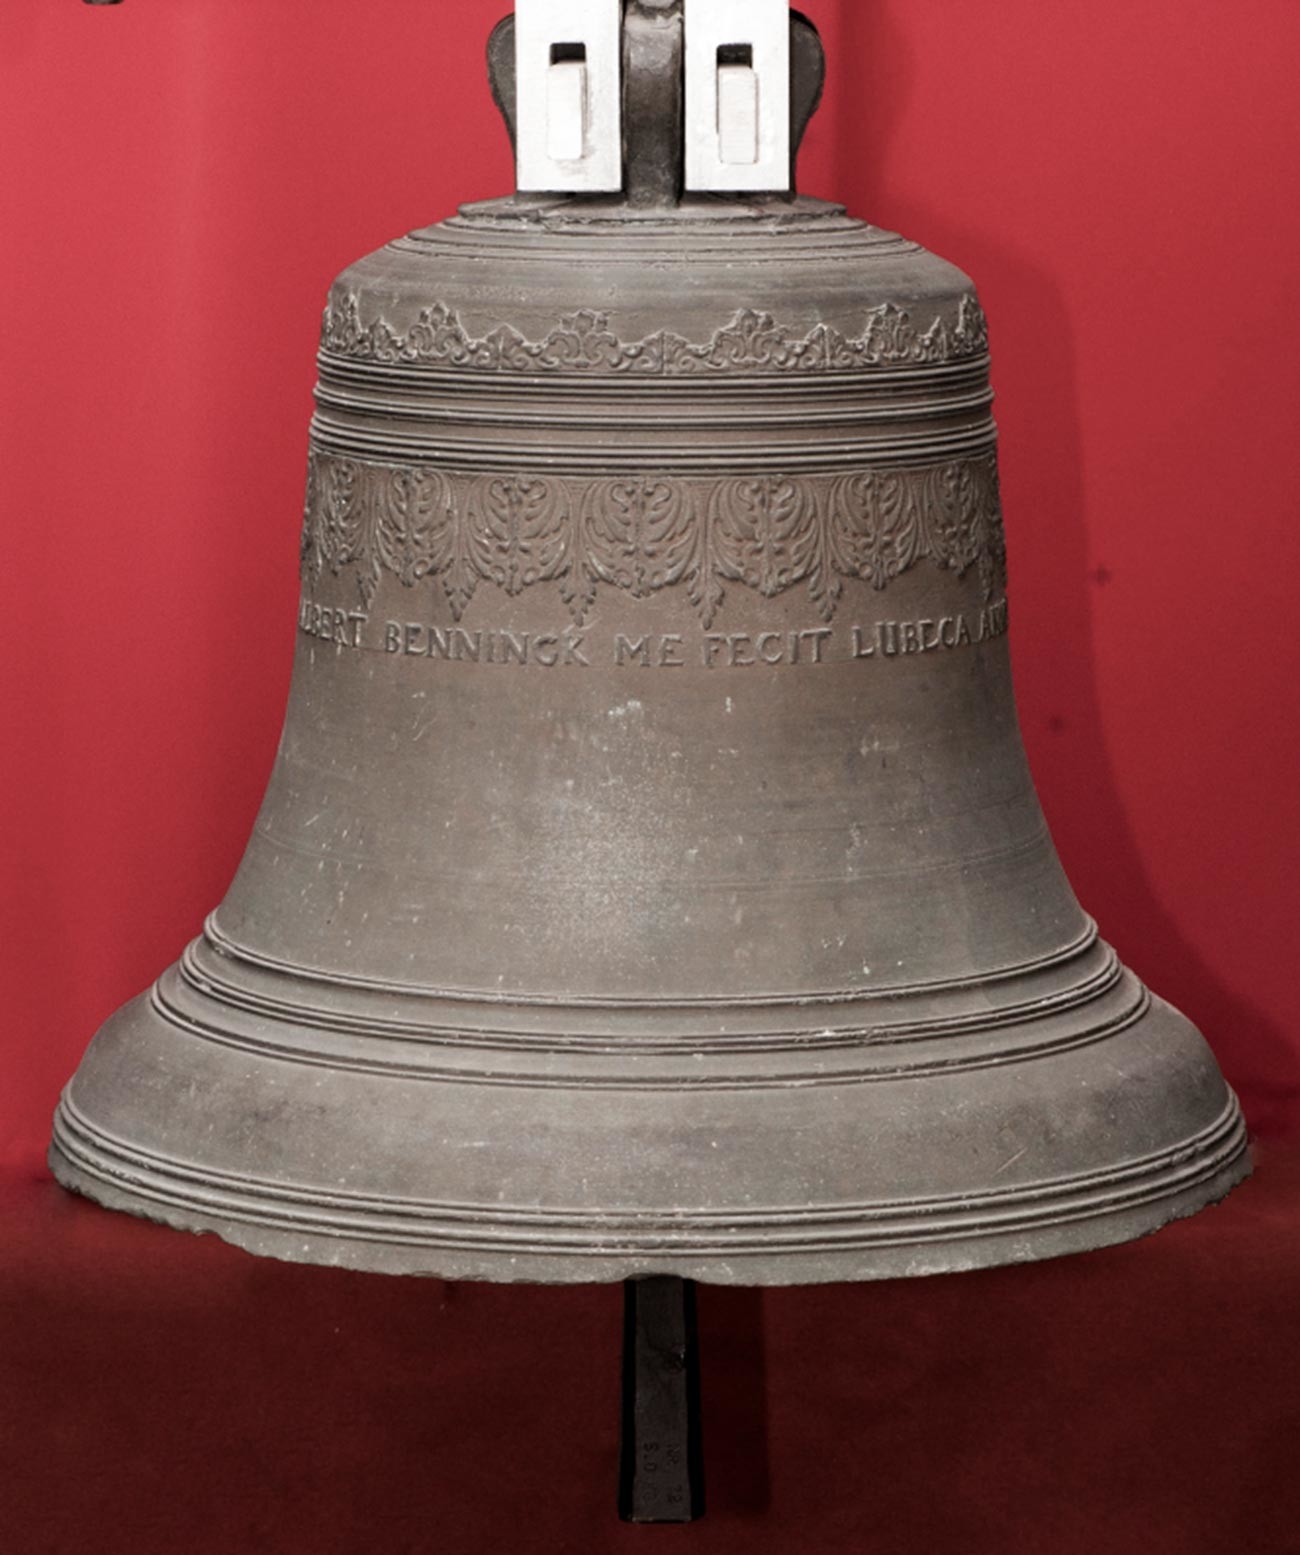 La campana de Benning en el museo local de Staraya Russa
